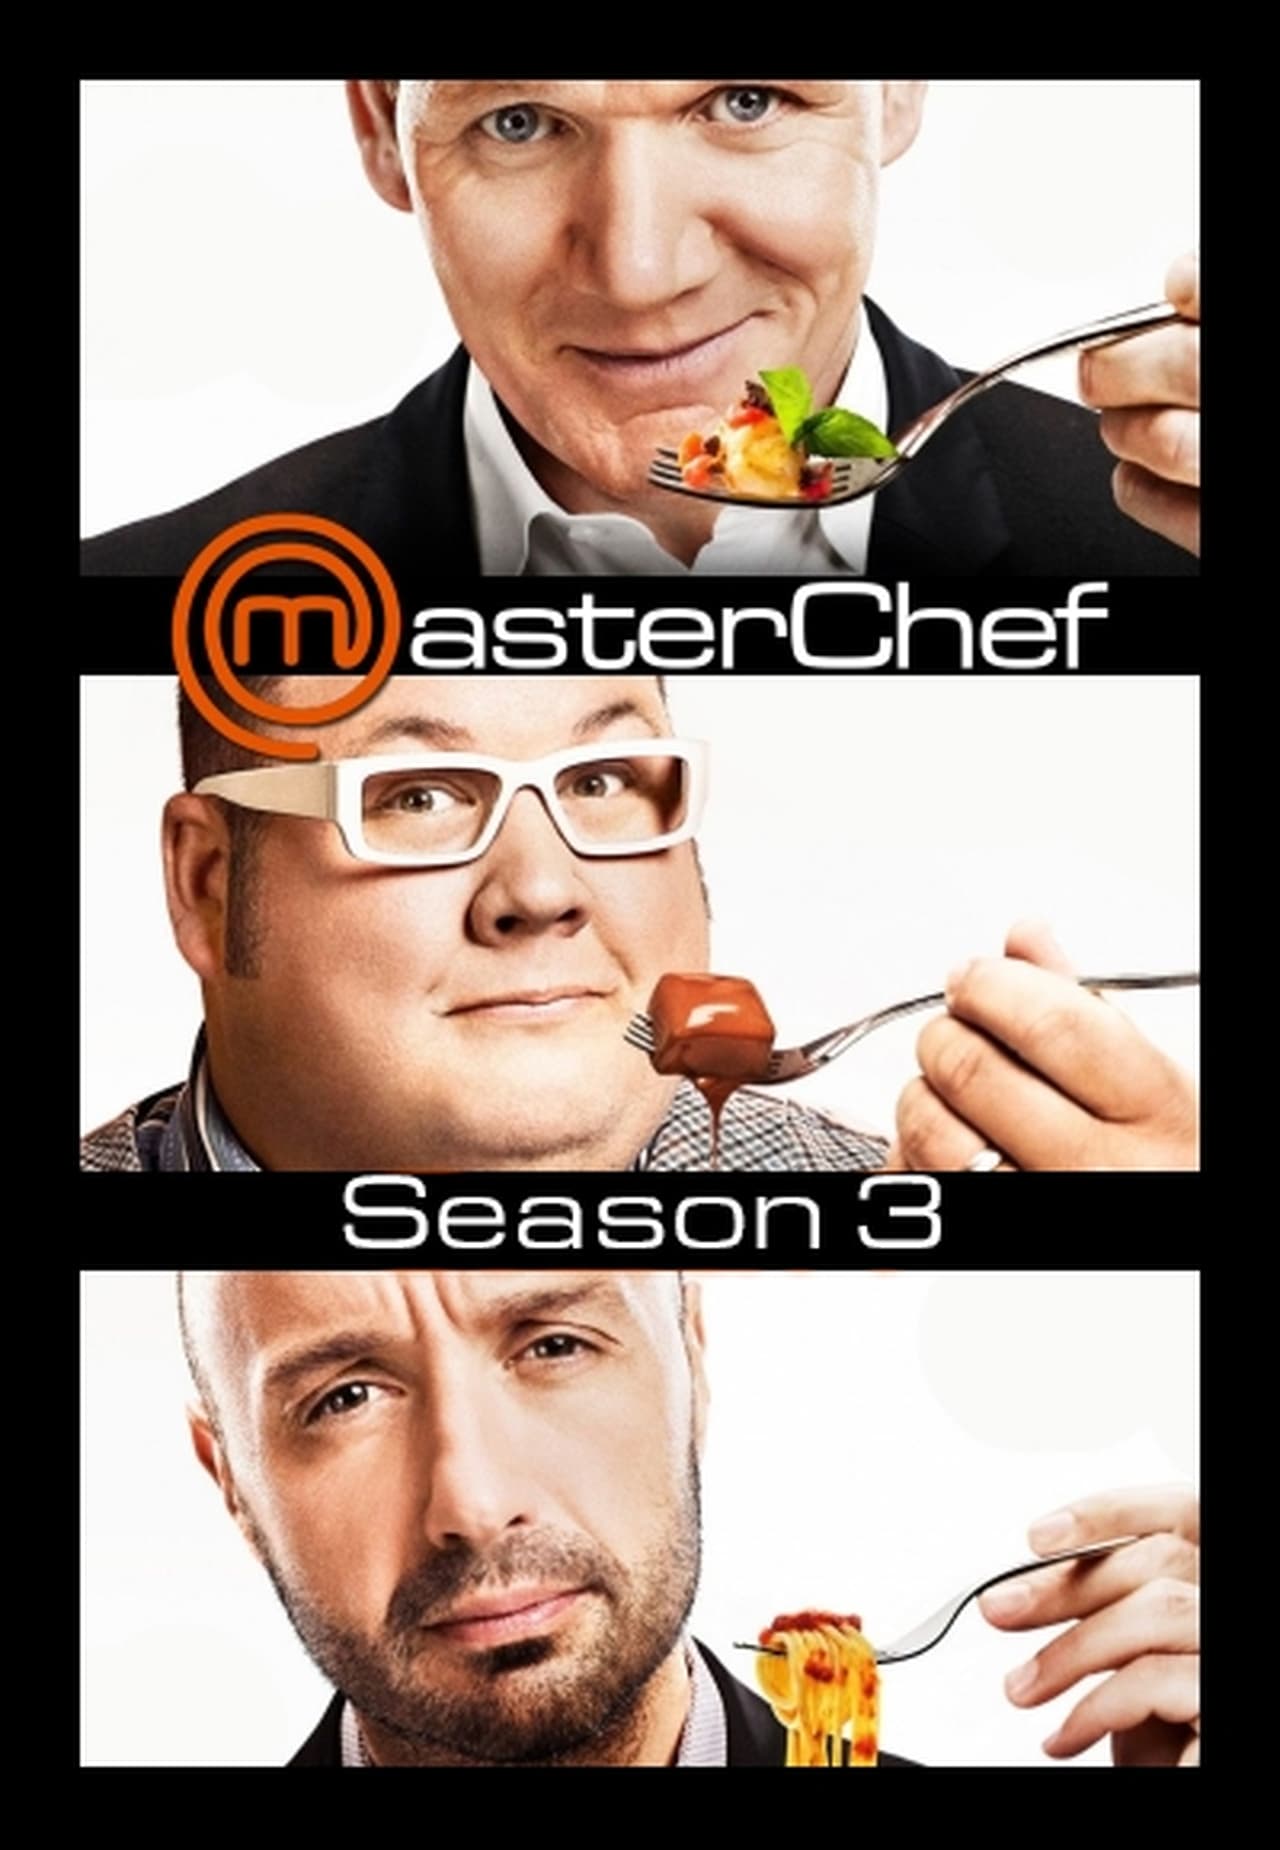 MasterChef Season 3